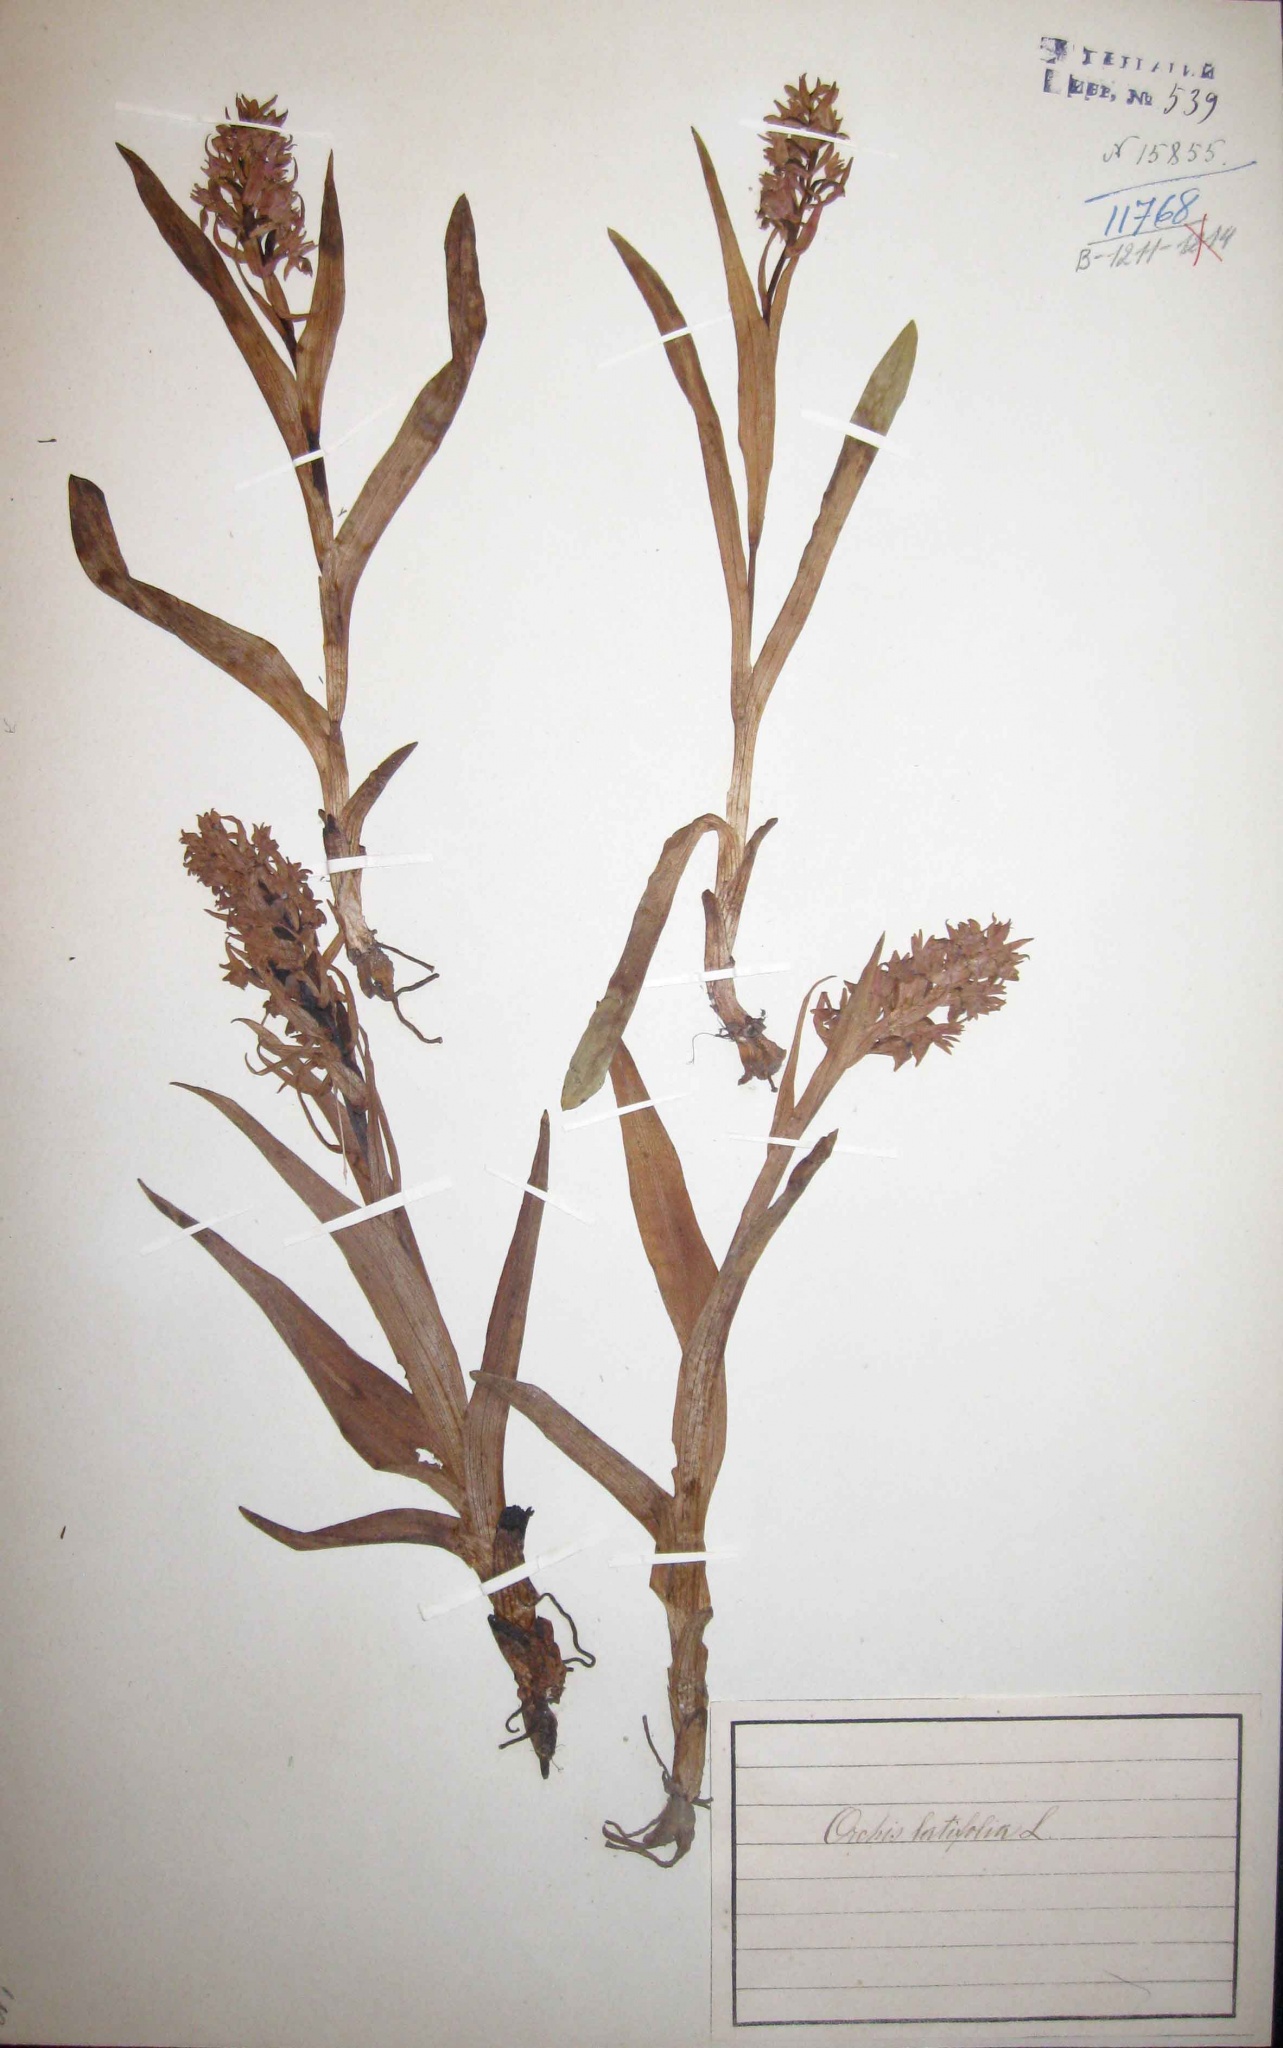 Пальчатокоренник майский (широколистный) (Dactylorhiza majalis) — вид, включенный в Красную книгу Российской Федерации.